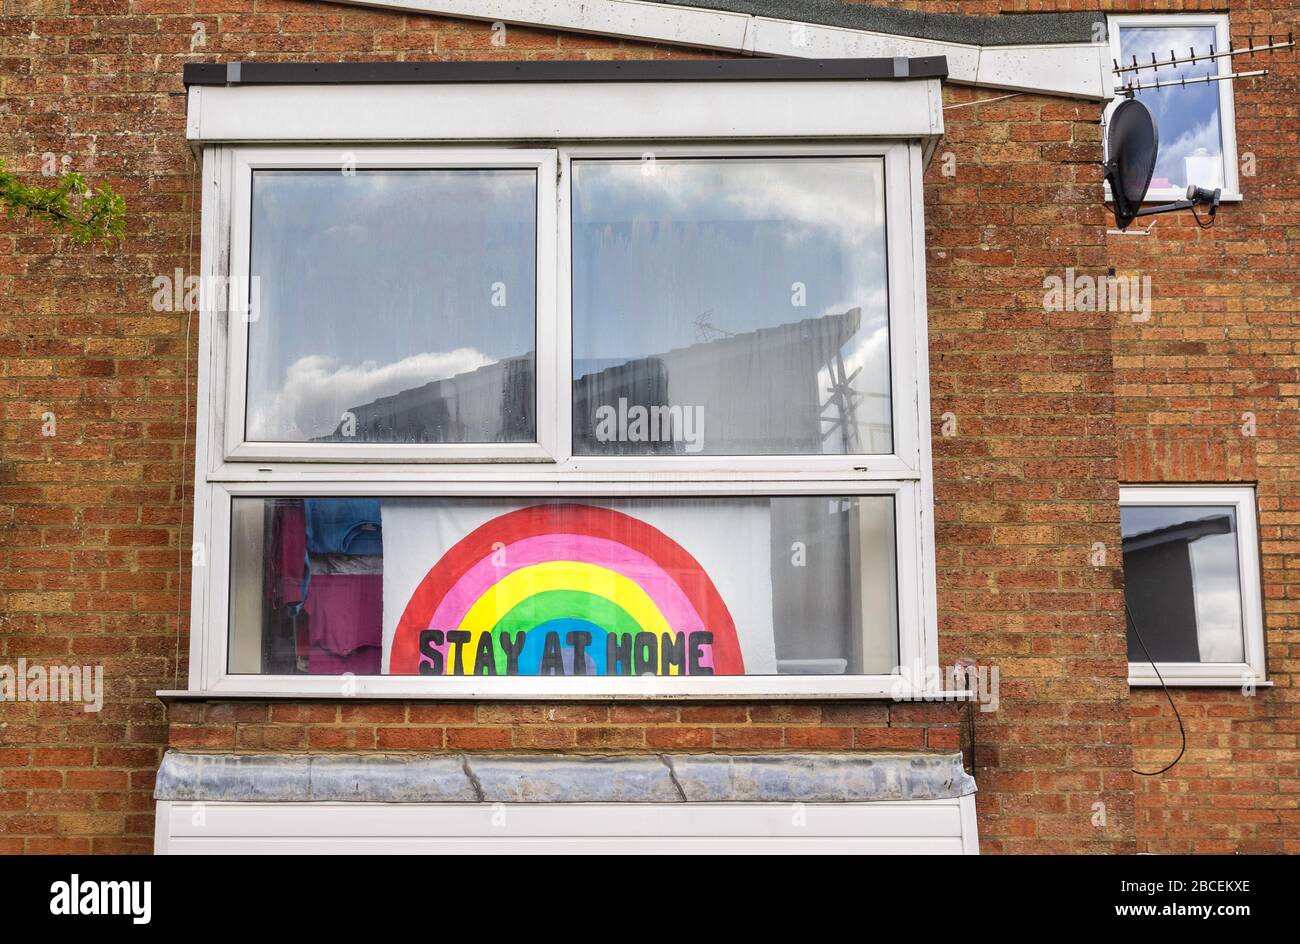 Bannière avec un « message à domicile » et un arc-en-ciel affiché dans une fenêtre au plus haut de la pandémie de coronavirus pendant le verrouillage en avril 2020 à Southampton, Angleterre, Royaume-Uni Banque D'Images